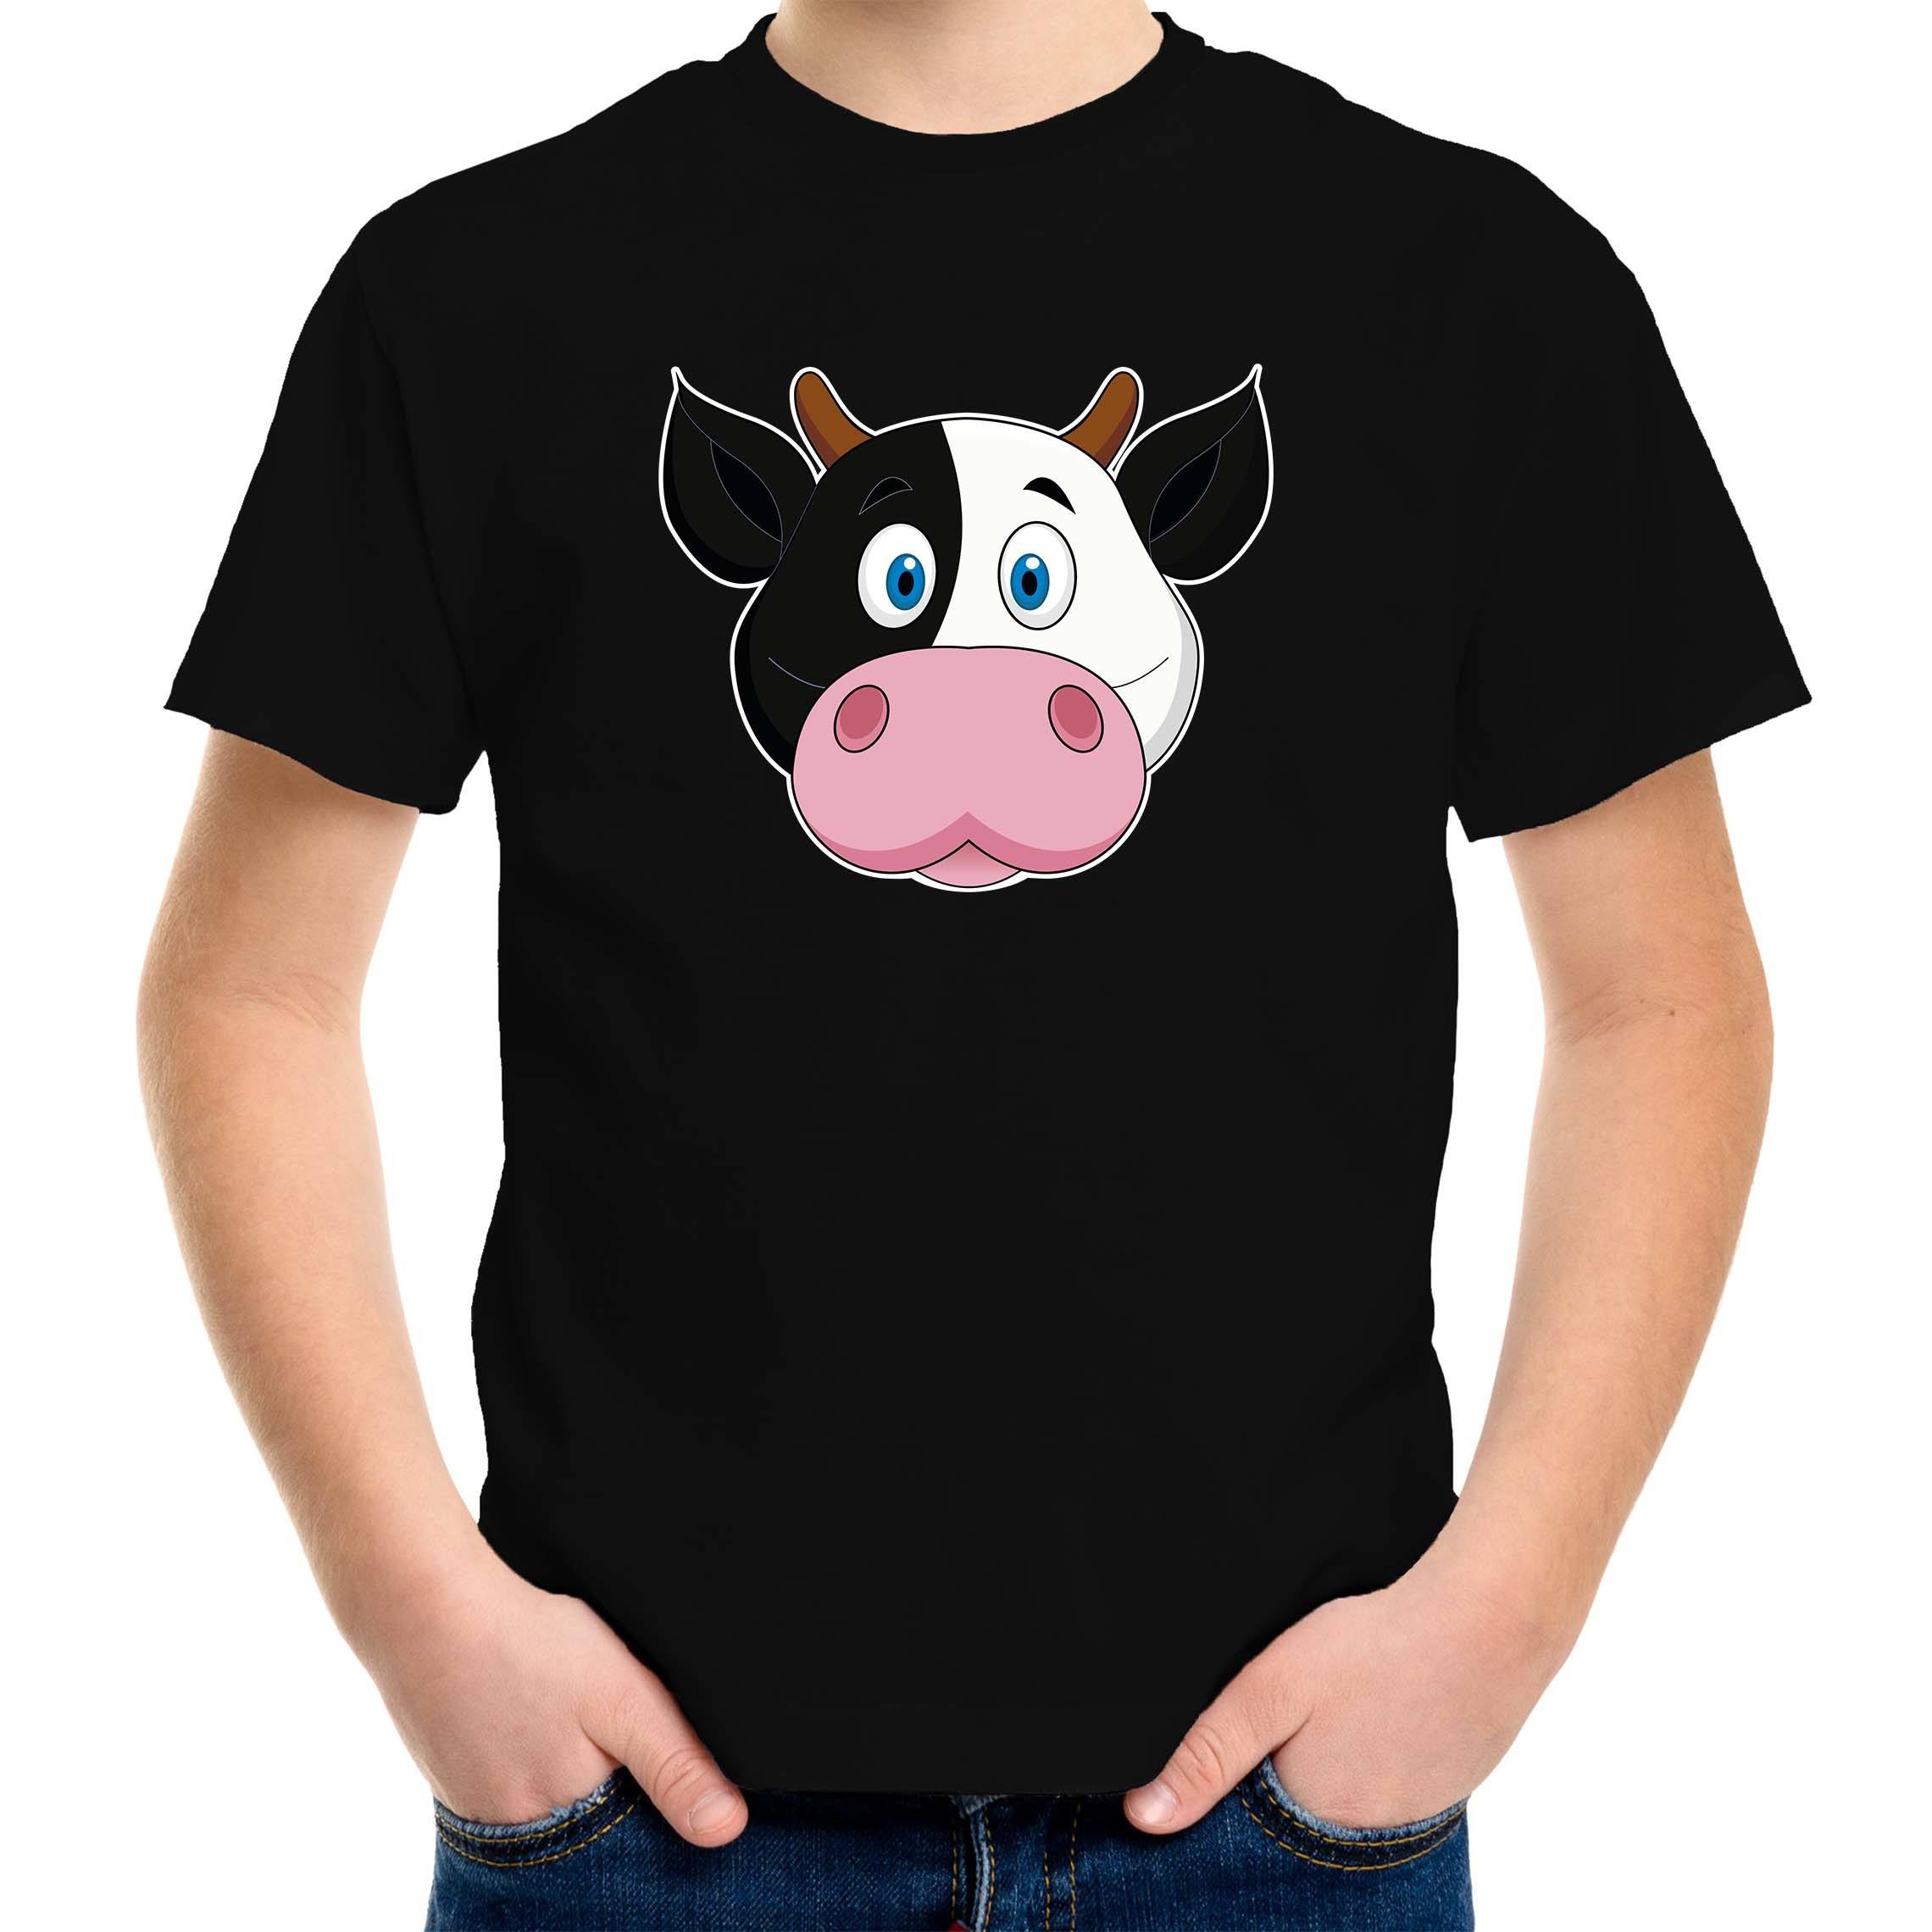 Cartoon koe t-shirt zwart voor jongens en meisjes - Cartoon dieren t-shirts kinderen